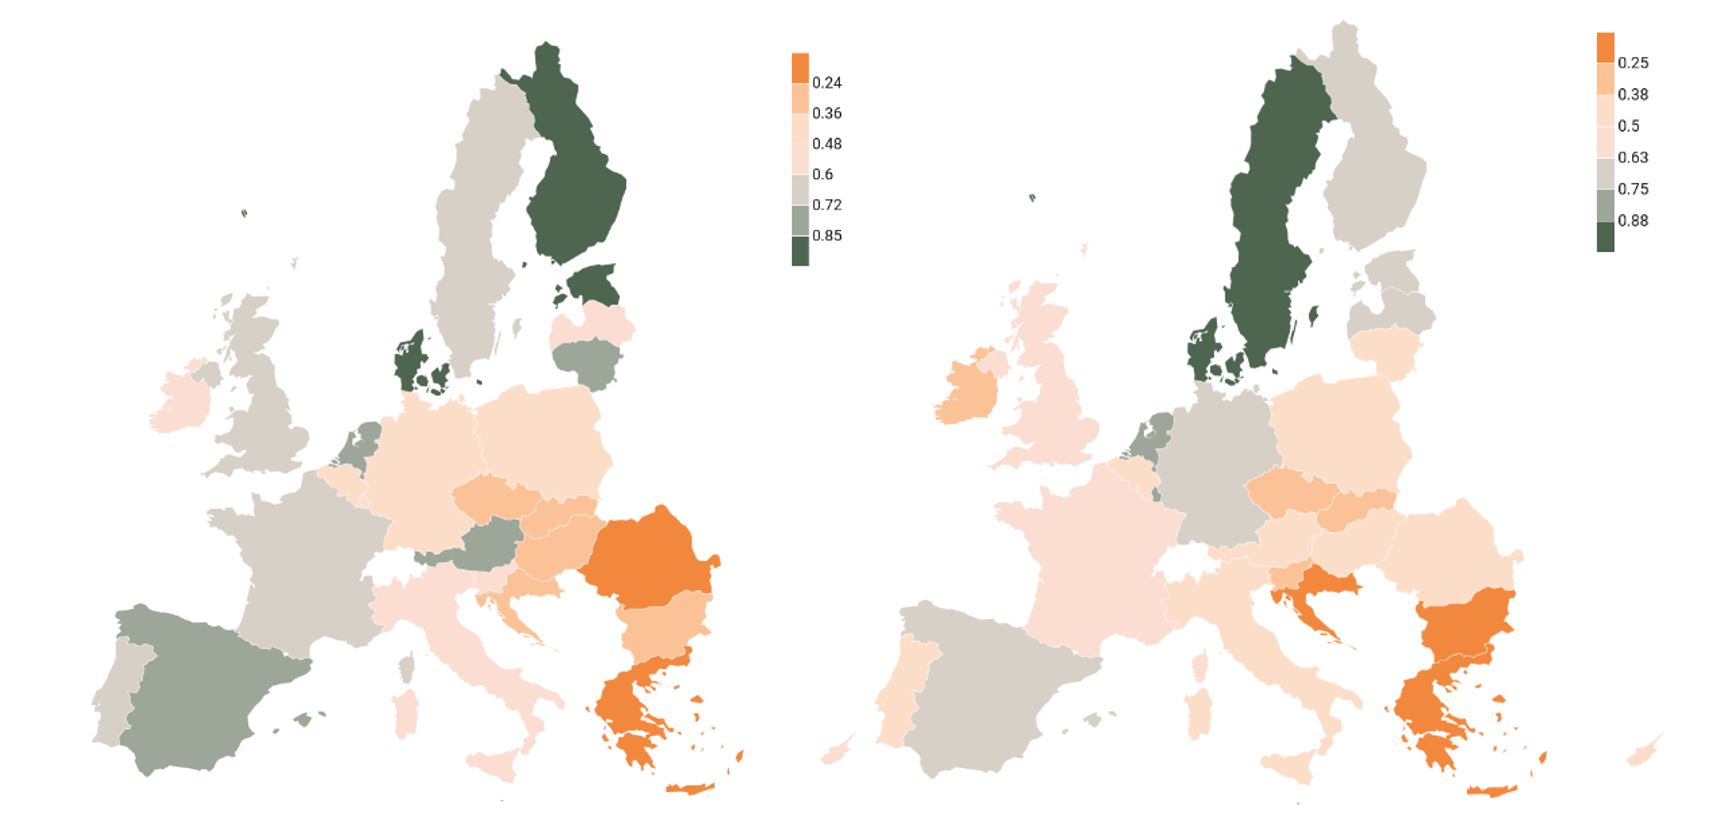 Två europakartor bredvid varandra, ju mörkare grön, desto högre poäng. Ju mörkare orange, desto lägre poäng.